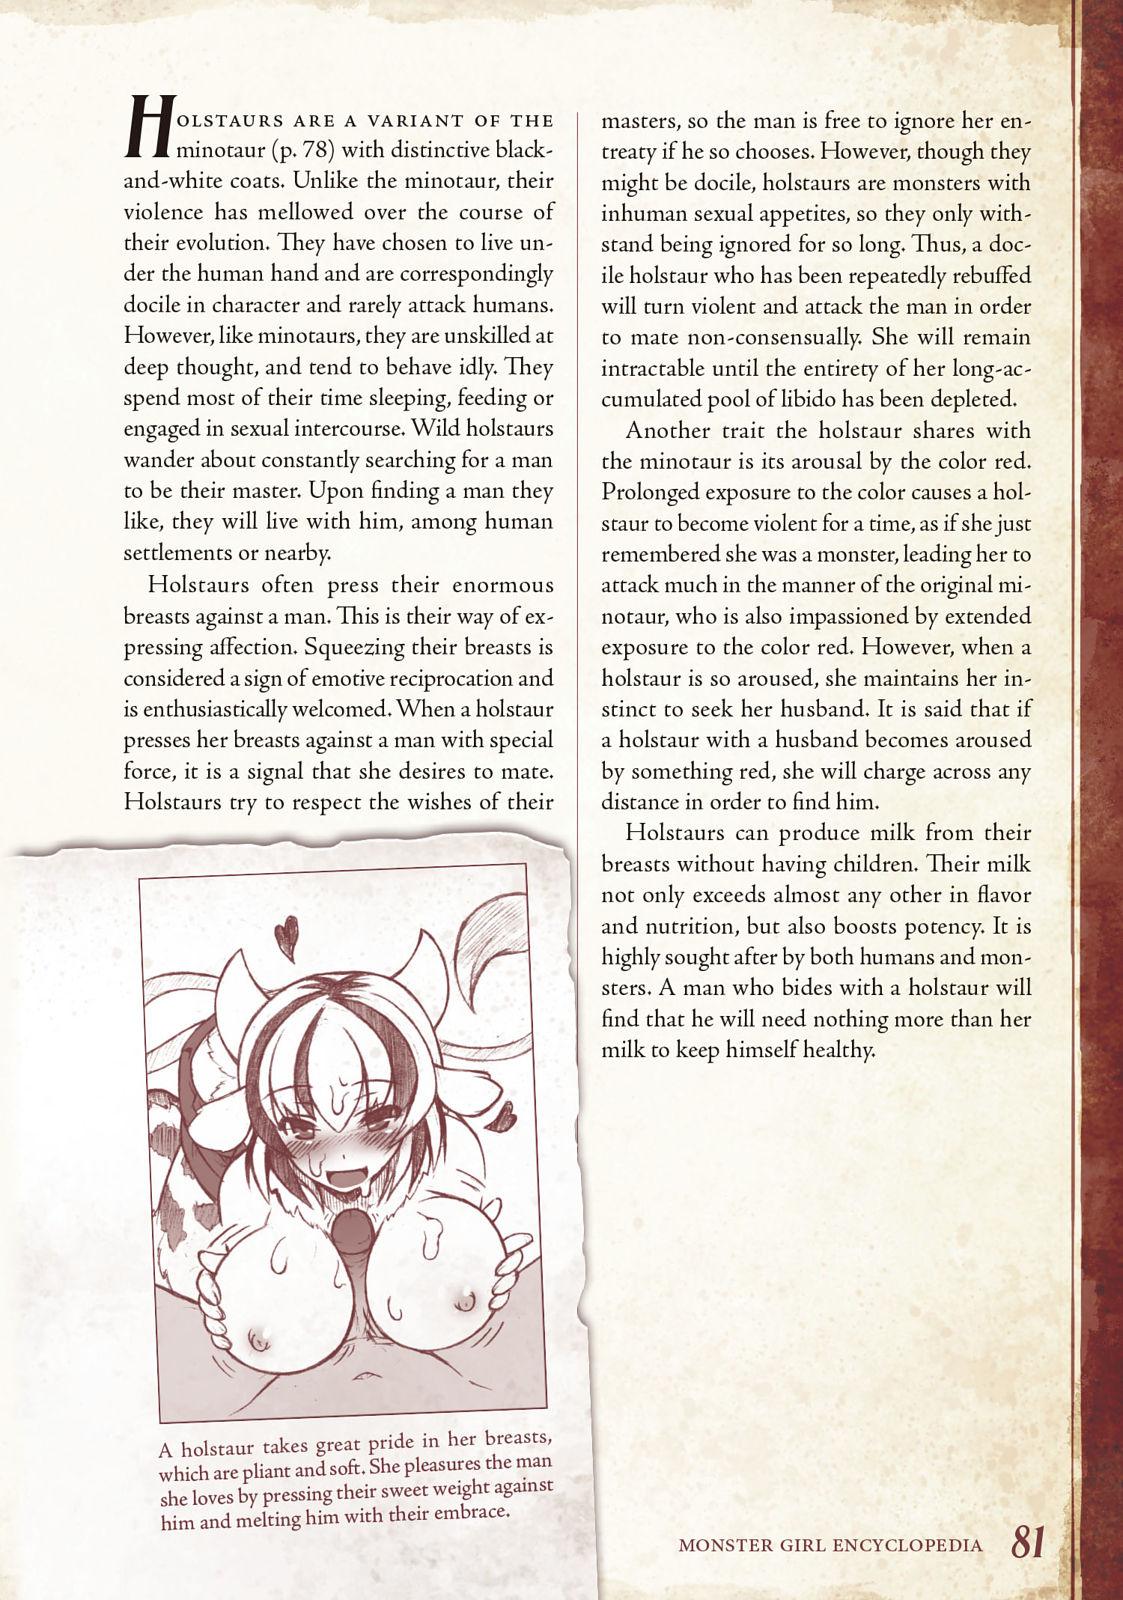 Monster Girl Encyclopedia Vol. 1 81